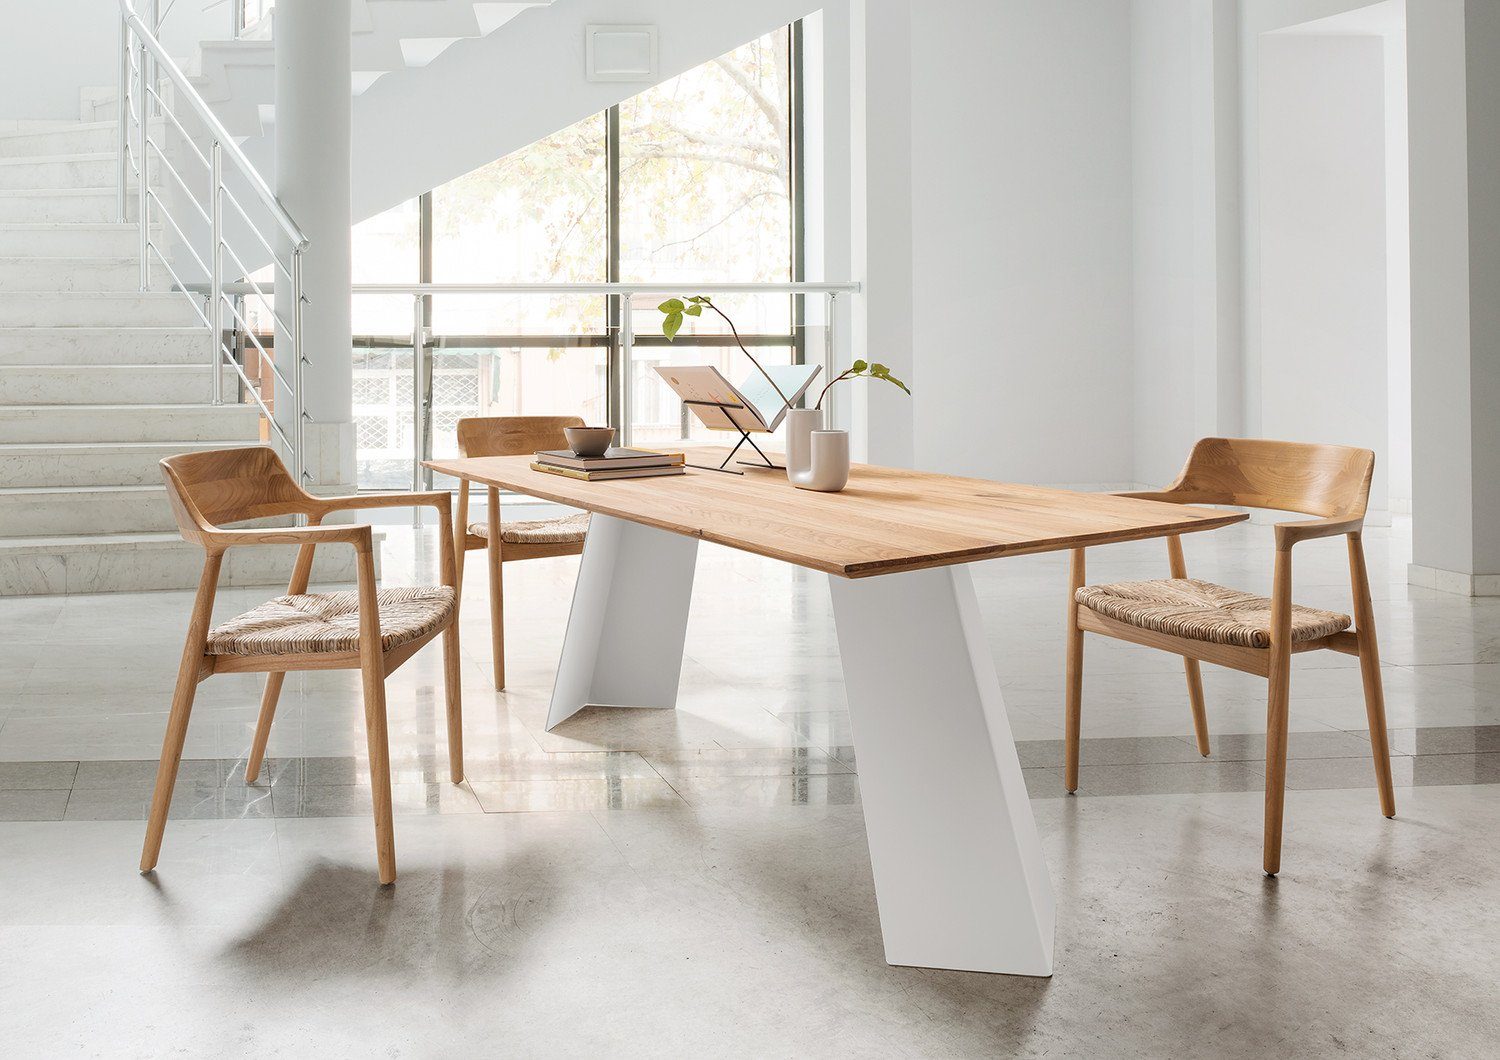 Stahl Weiß Natur24 Tischgestell Tischfuß 60x60x72 A-row Tischgestell